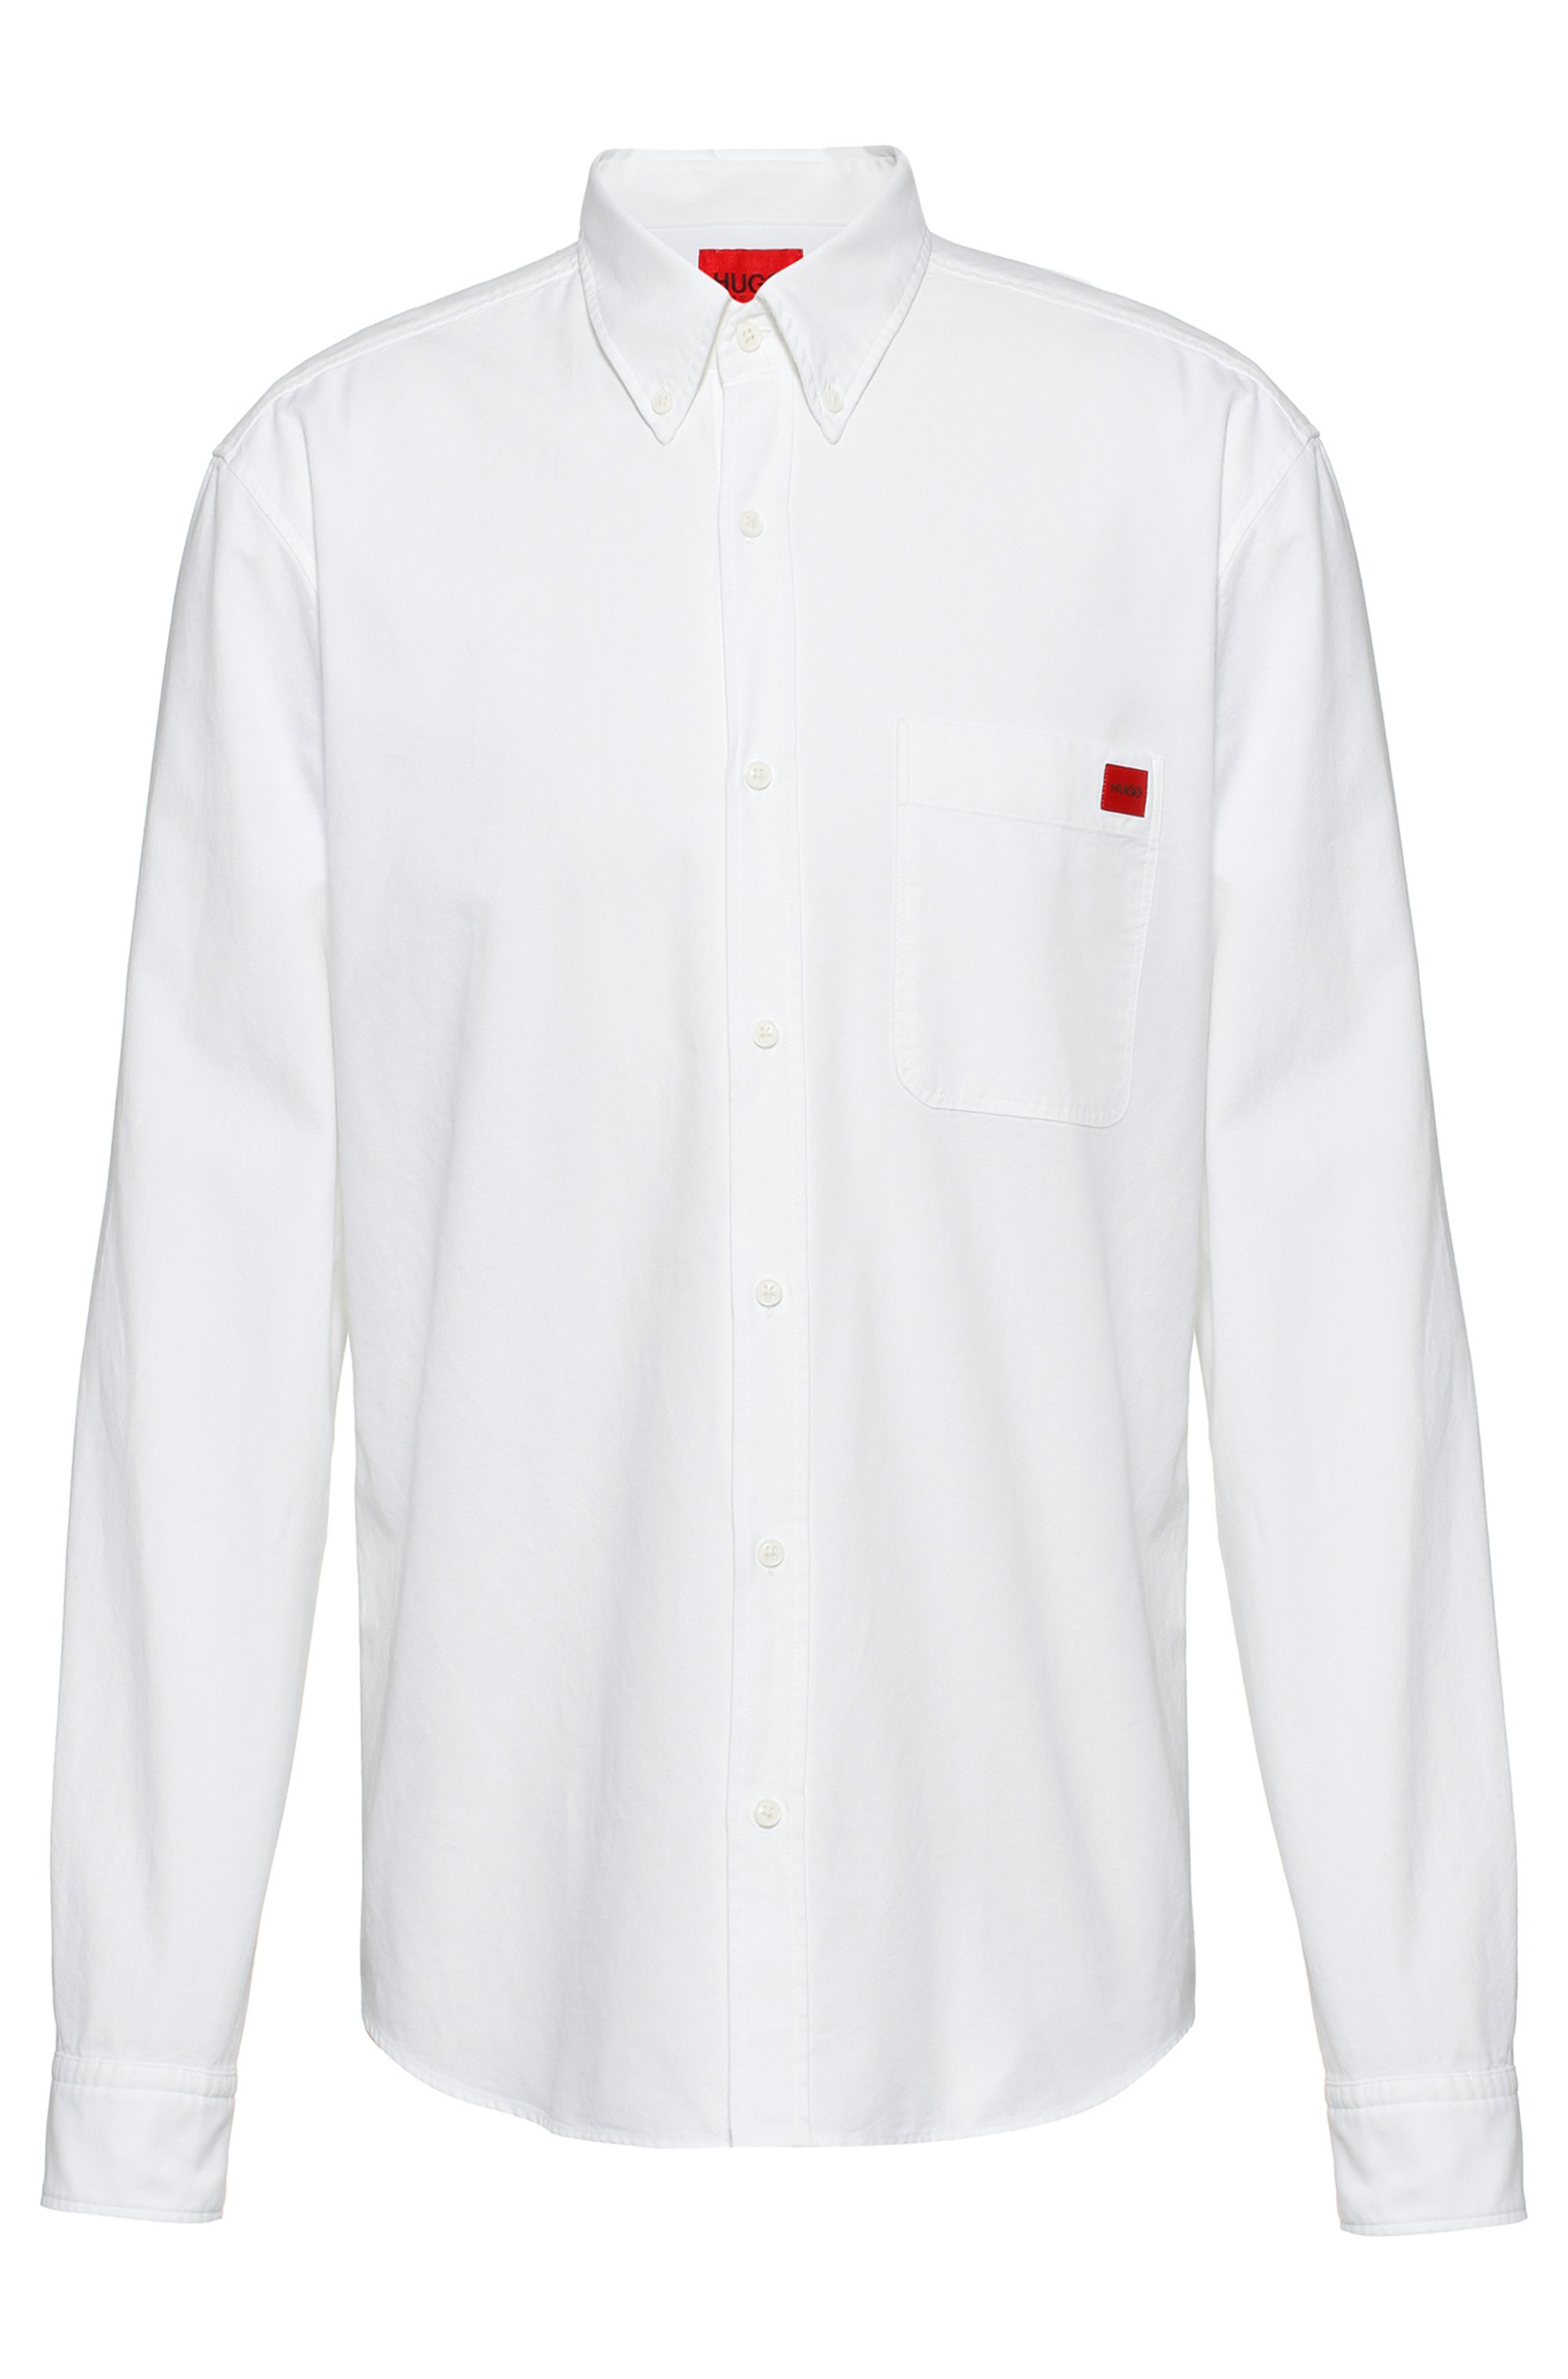 Chemise Extra Slim Fit en coton avec étiquette logo rouge, Blanc